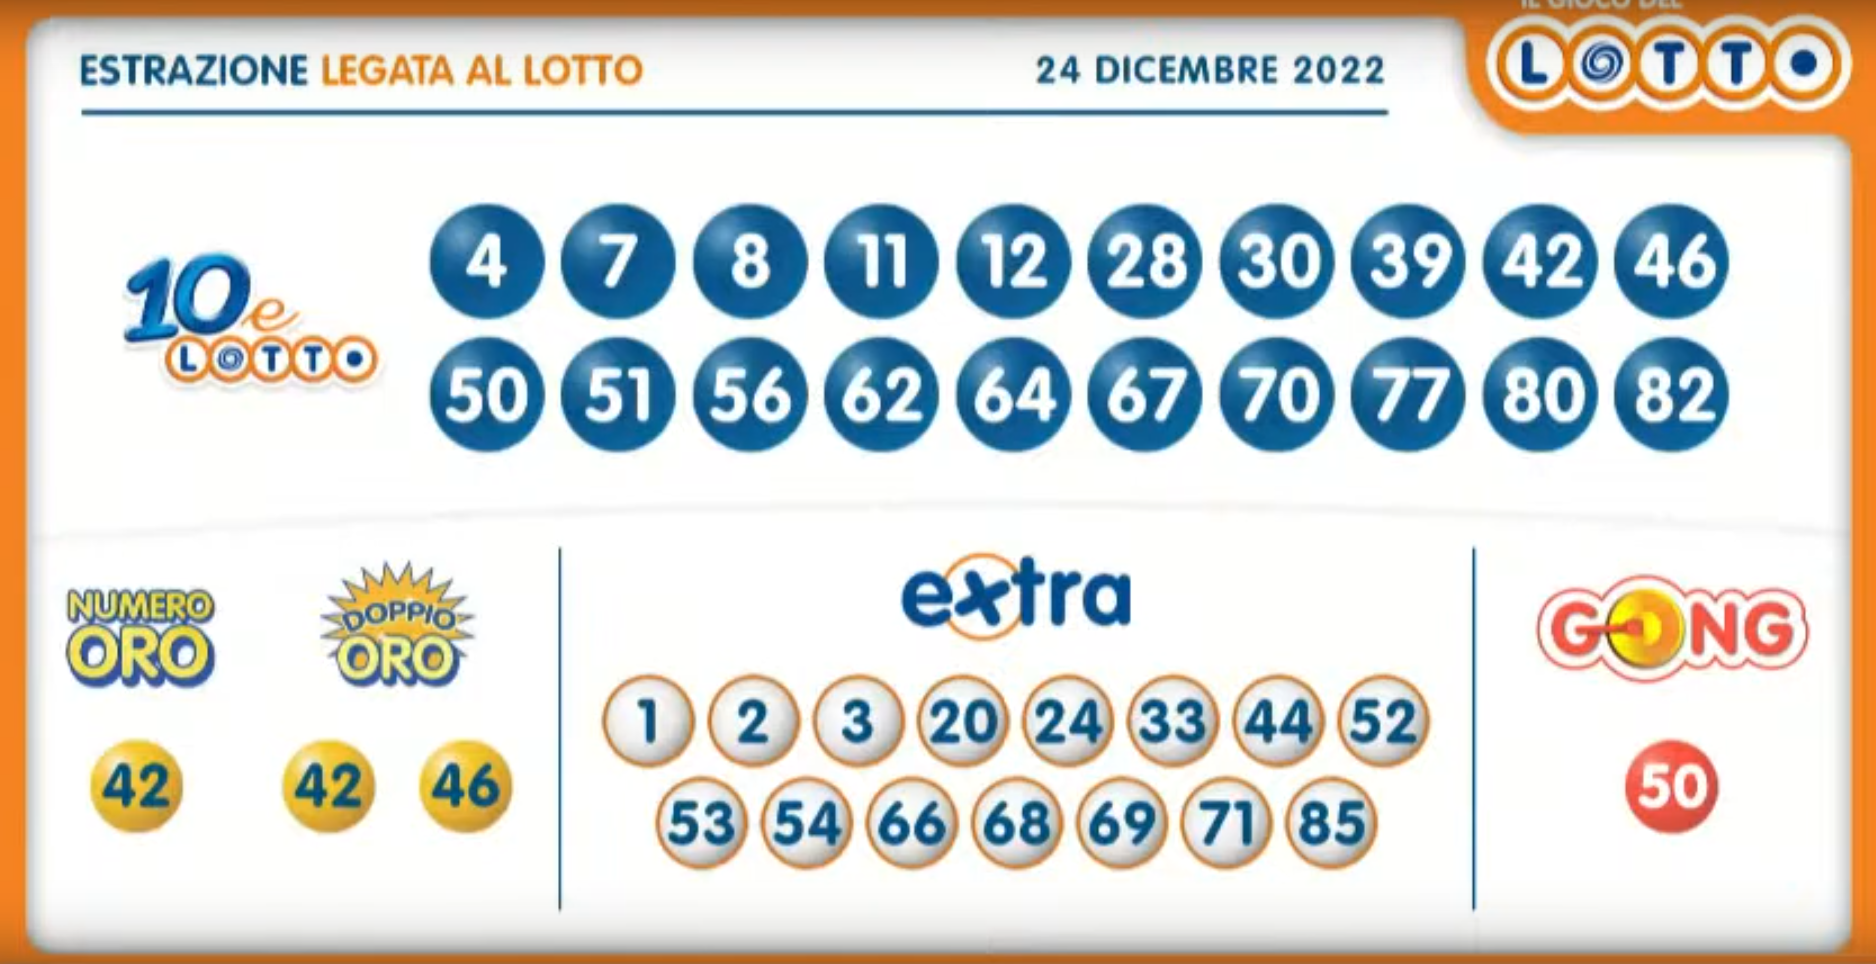 Estrazione del Lotto n.154 di sabato 24 dicembre 2022